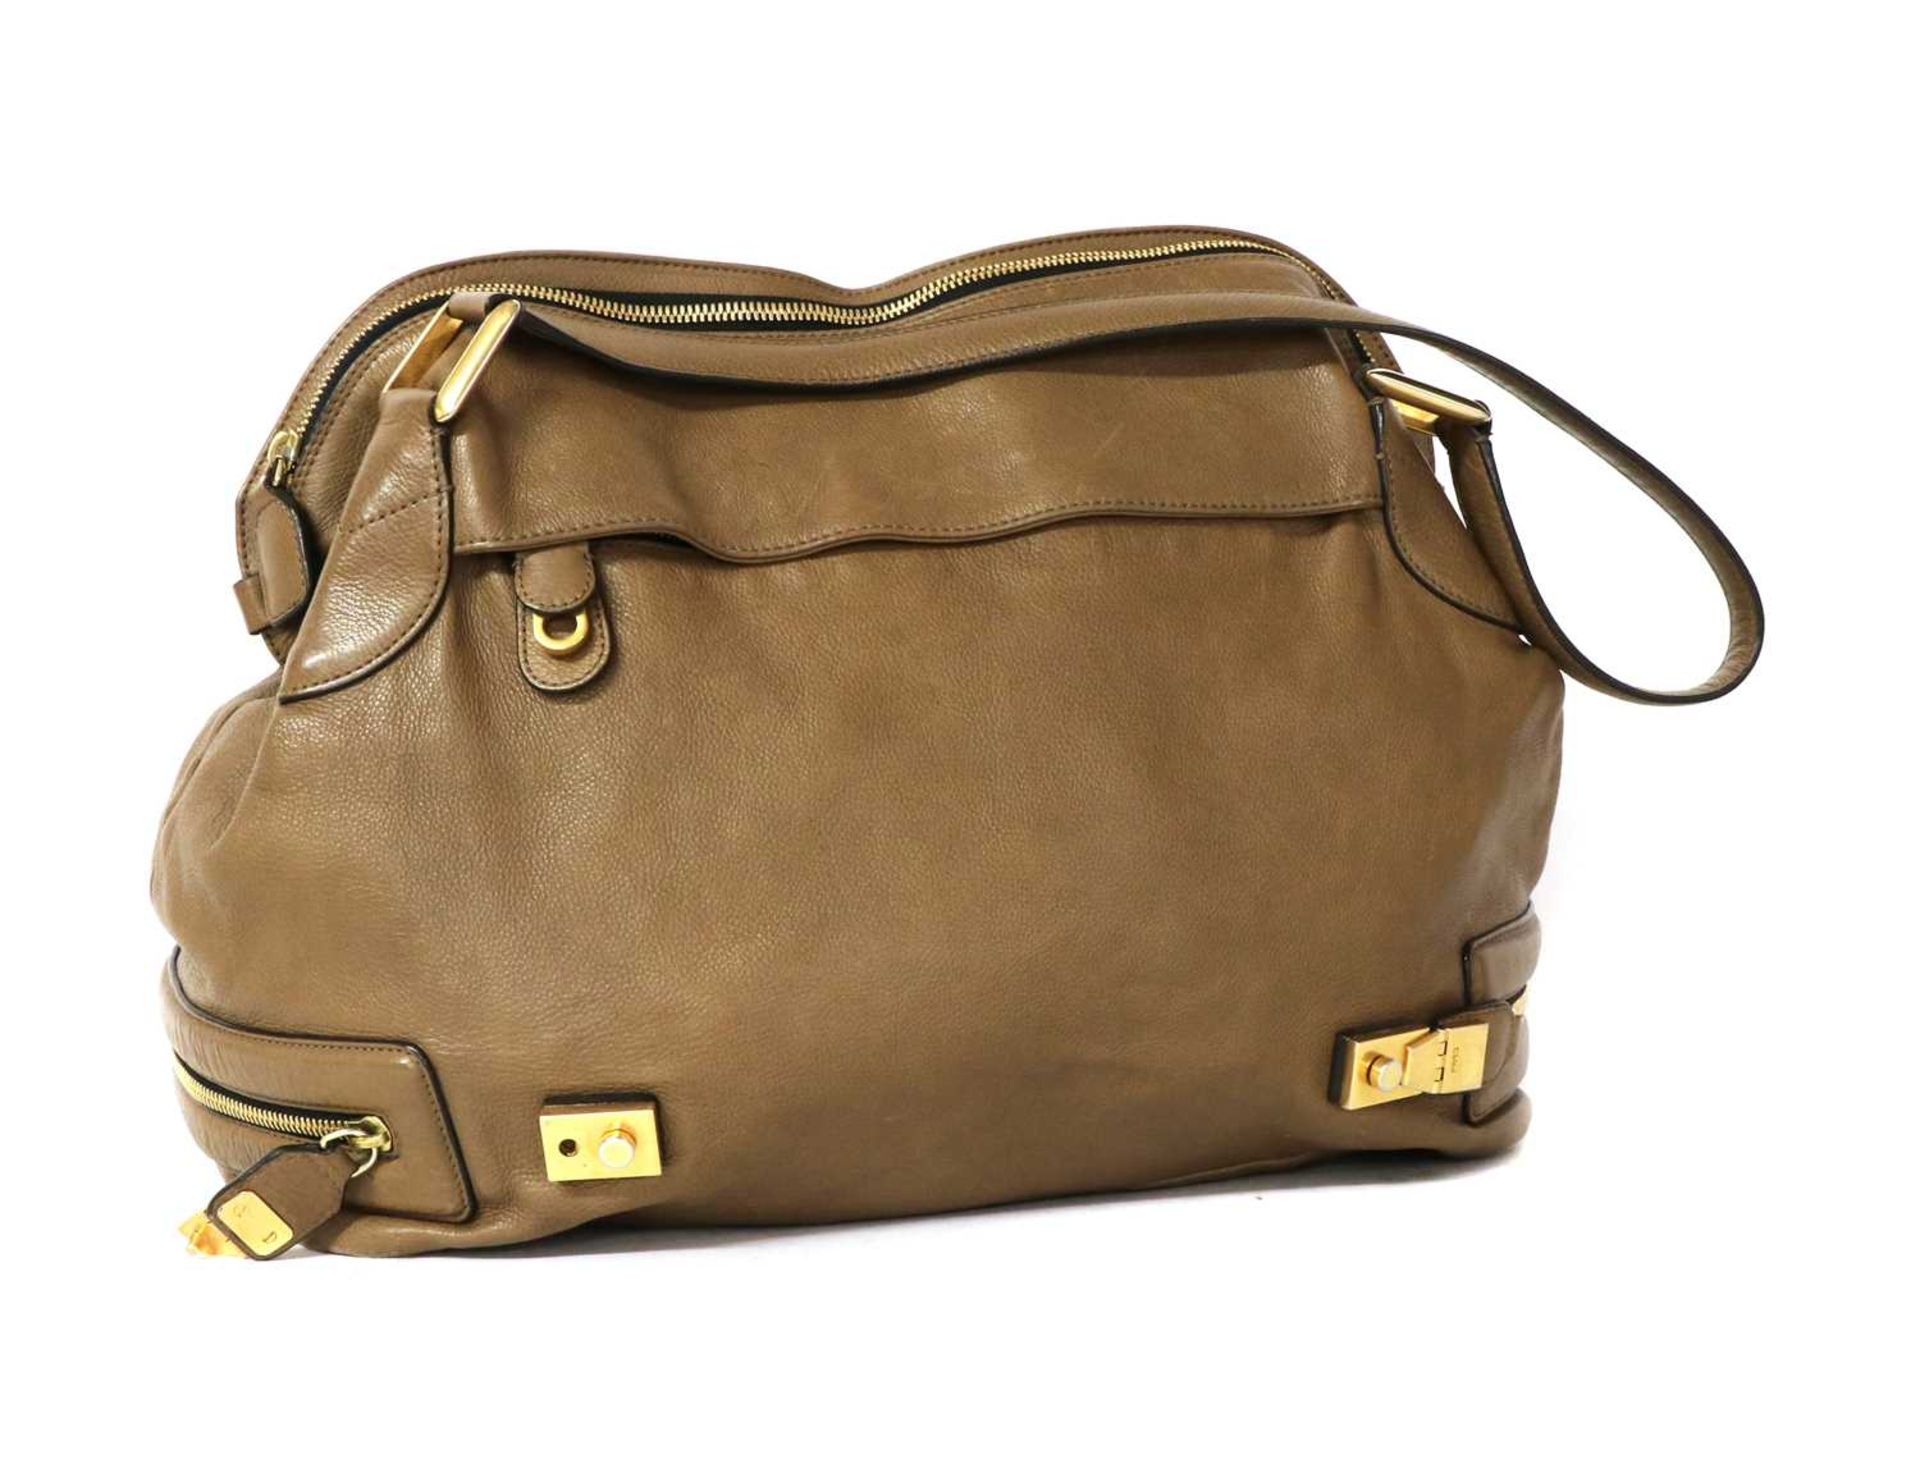 A Chloe brown leather shoulder bag